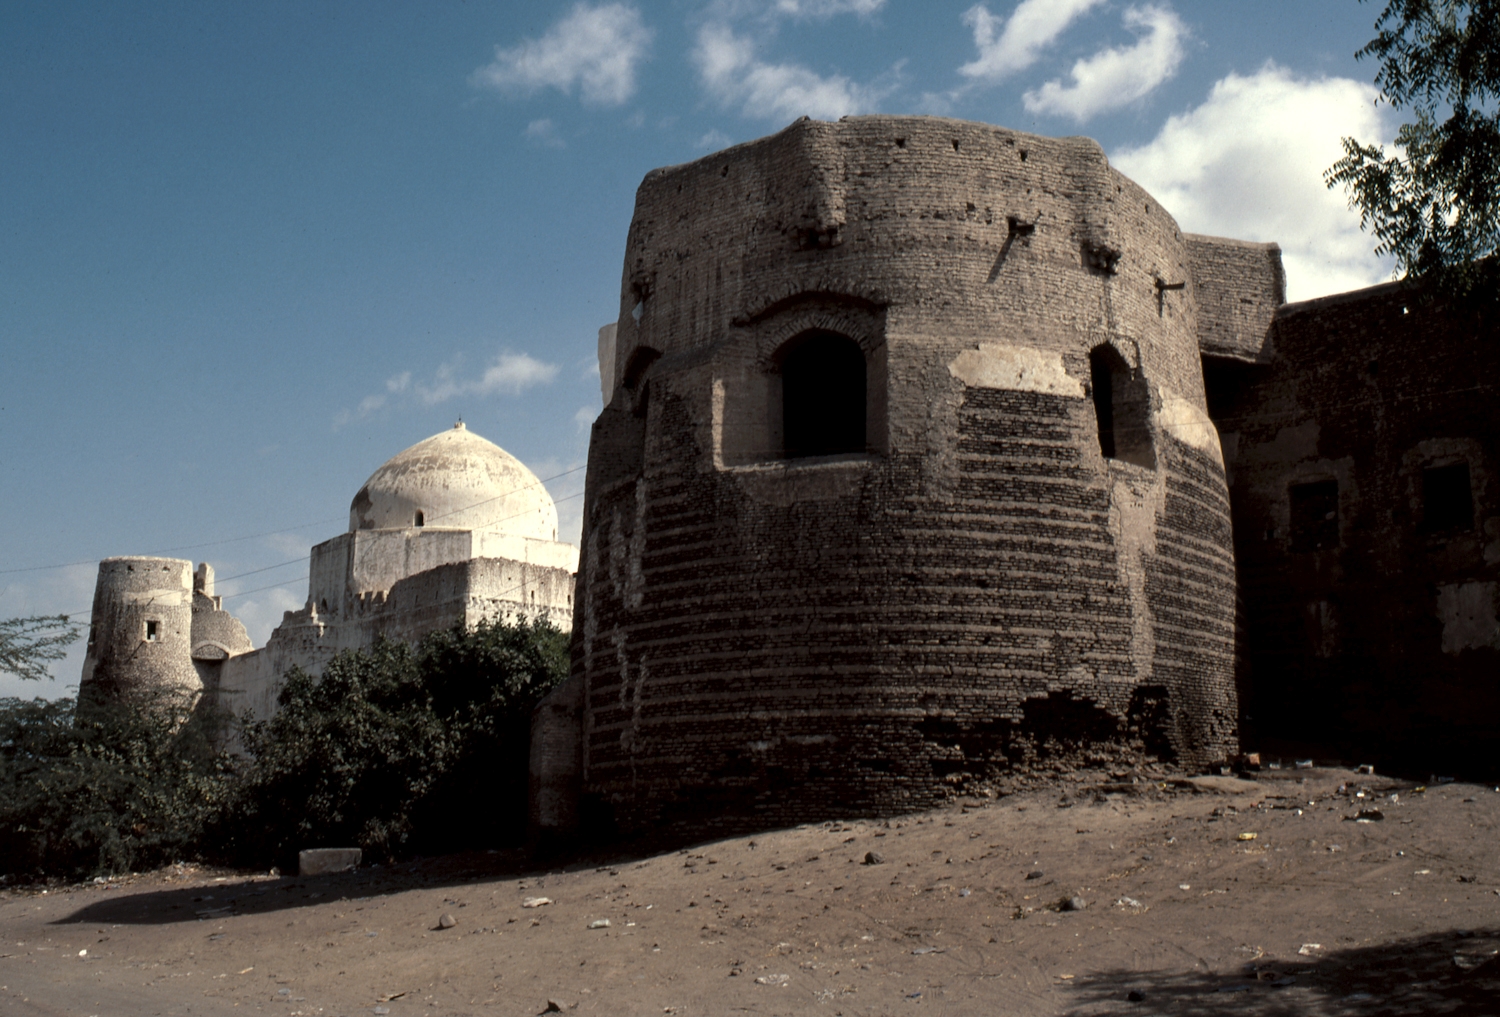 Zabid. Jami' al-Iskandariyya. Mosque and citadel walls.